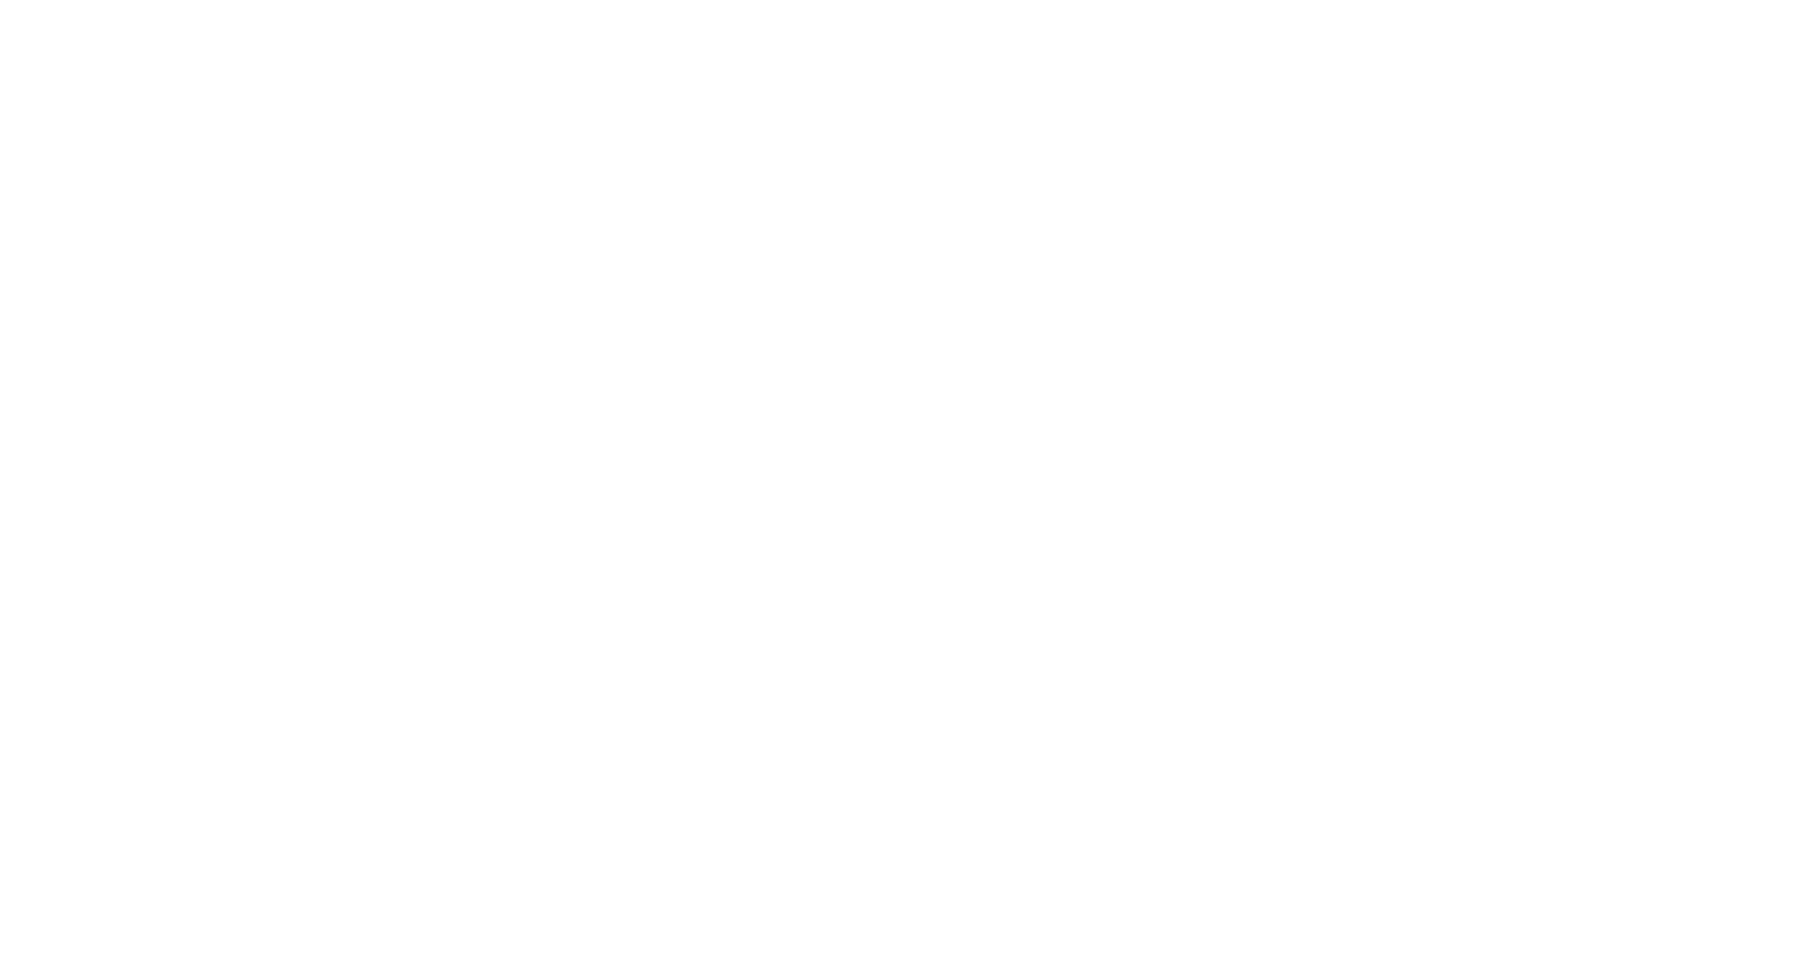 来准备出发旅行吧！快跟着西武铁路1日劵玩遍东京！